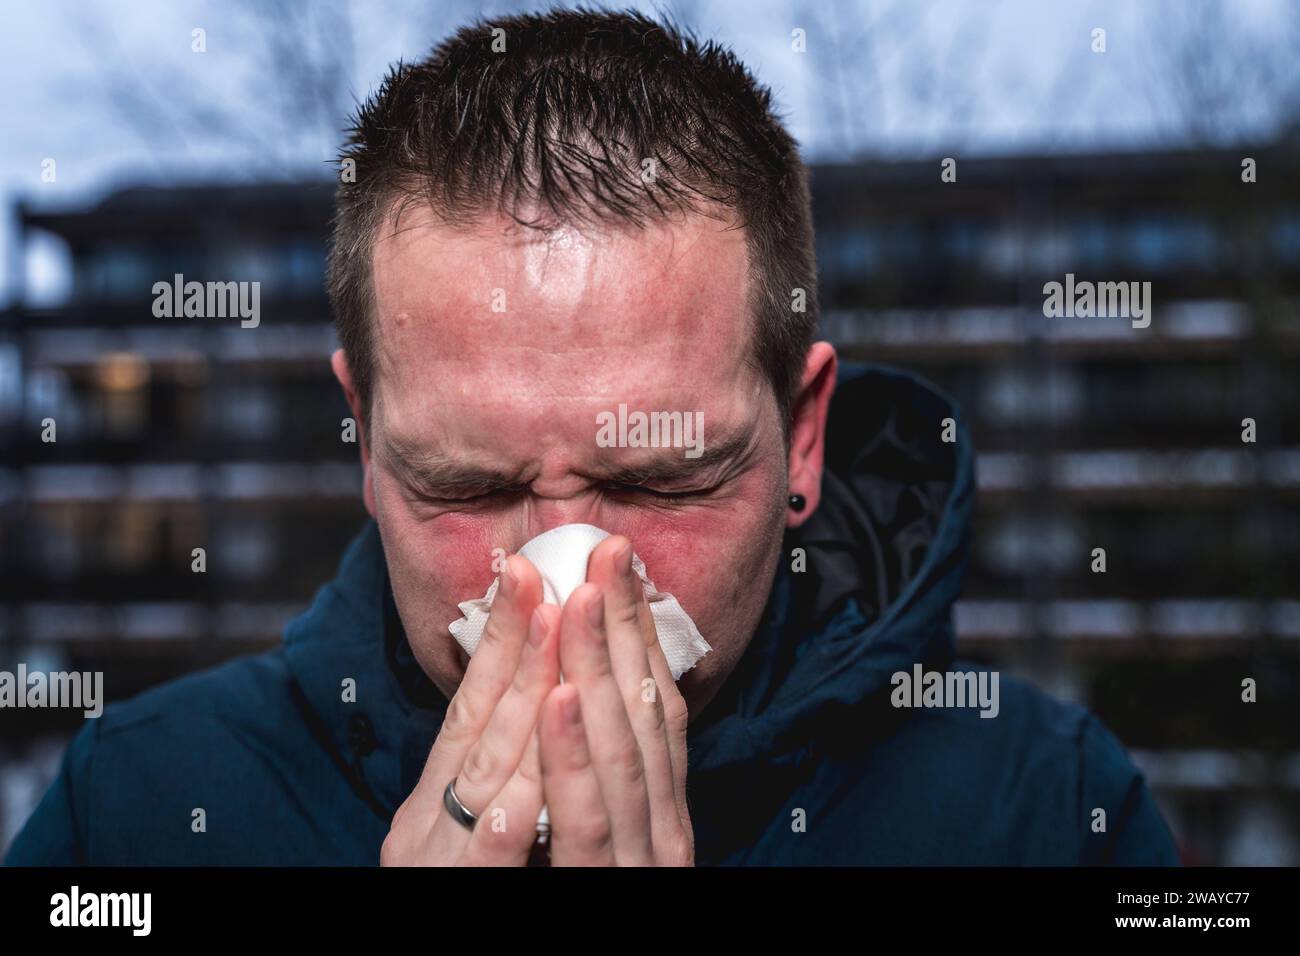 Bayern, Deutschland - 6. Januar 2024: Ein kranker Mann mit Erkältung bläst sich mit einem Papiertaschentuch die Nase *** ein kranker erkälteter Mann putzt sich mit einem Papiertaschentuch die Nase Stockfoto